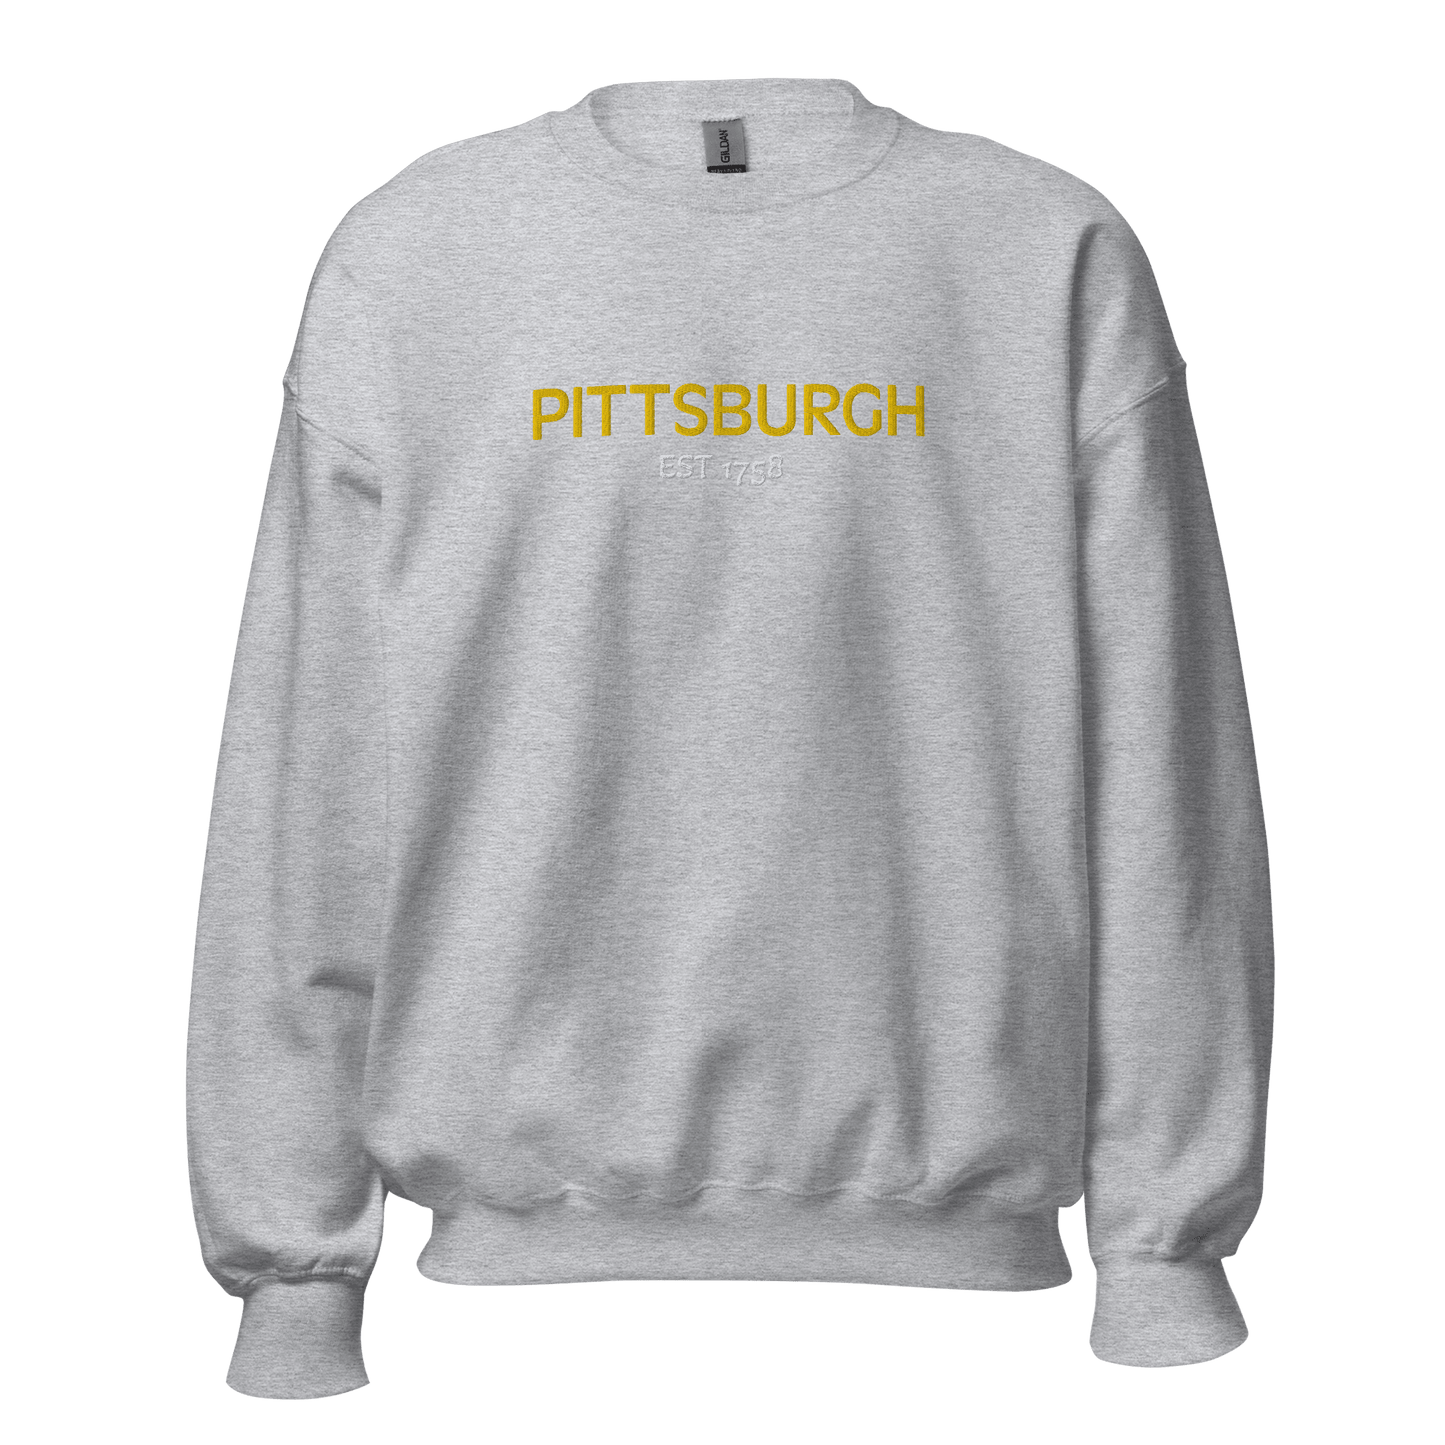 Embroidered Pittsburgh EST 1758 Sweatshirt Yinzergear Sport Grey S 